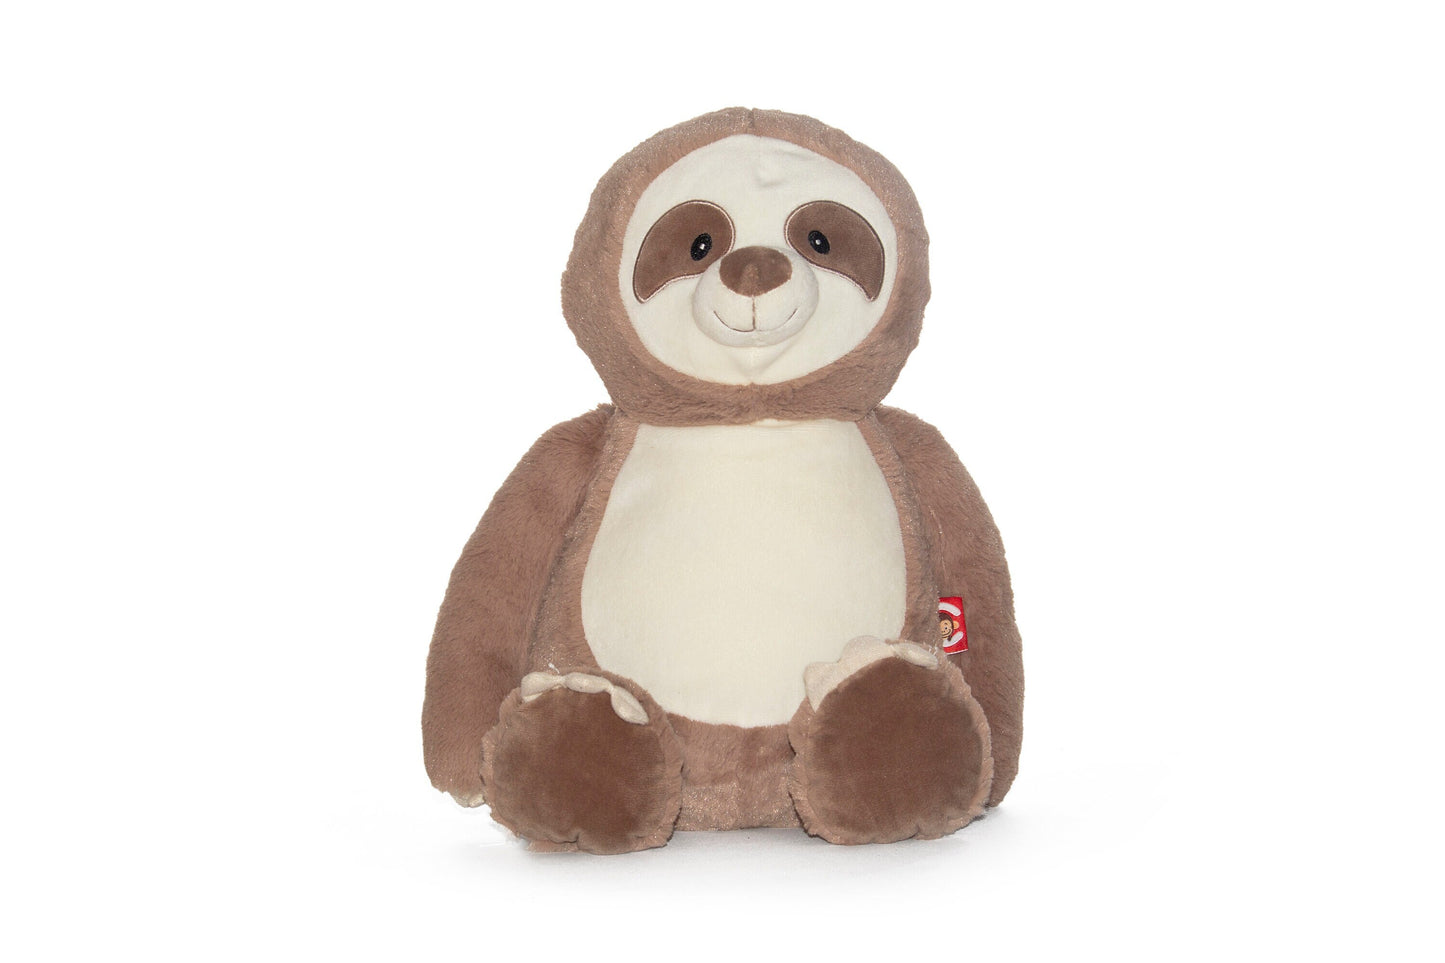 16" Personalized Sloth Stuffed Animal